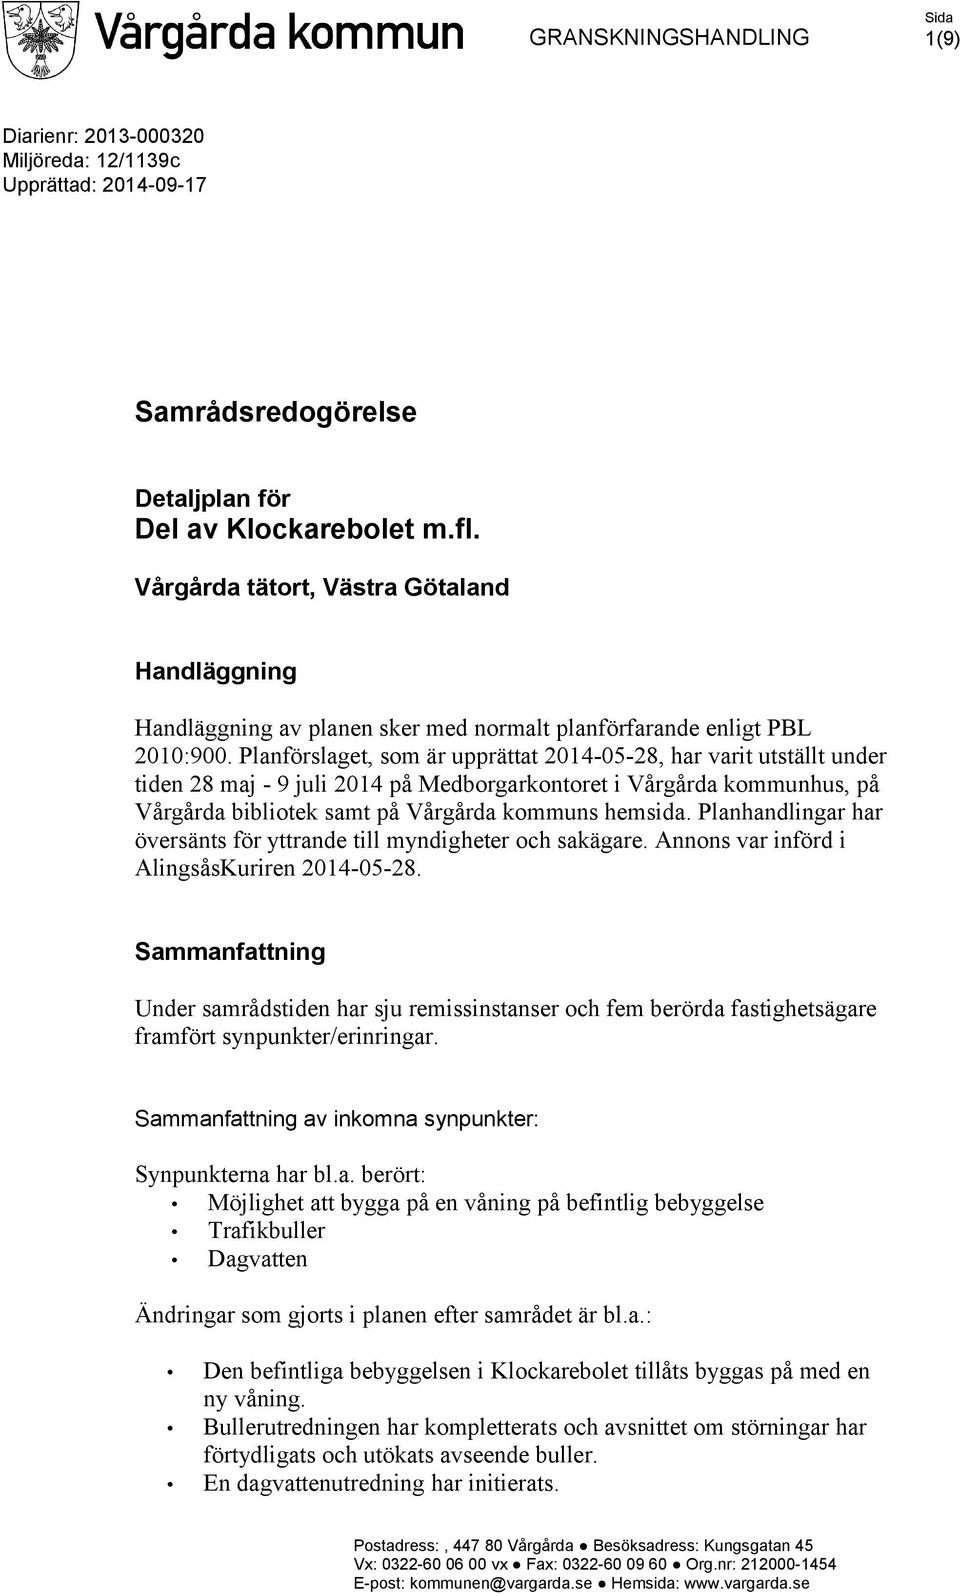 Planförslaget, som är upprättat 2014-05-28, har varit utställt under tiden 28 maj - 9 juli 2014 på Medborgarkontoret i Vårgårda kommunhus, på Vårgårda bibliotek samt på Vårgårda kommuns hemsida.